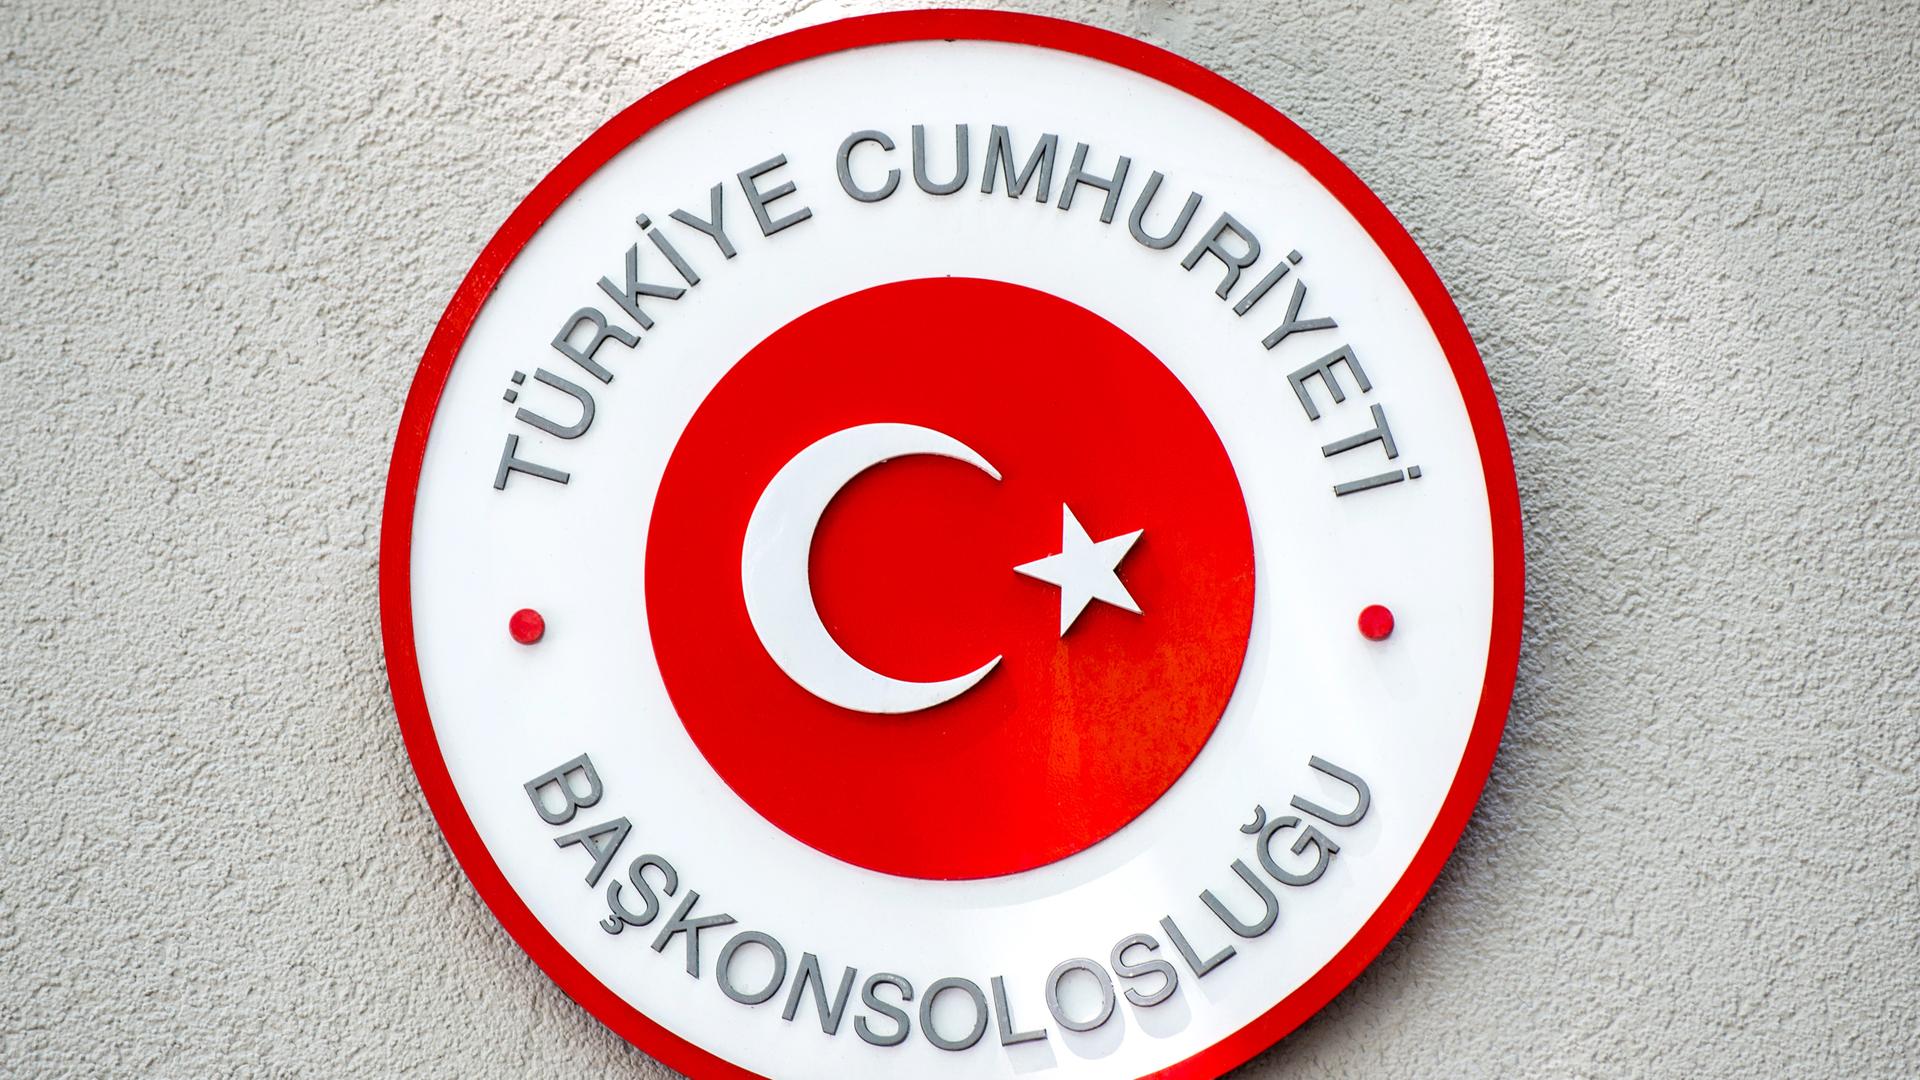 Das runde rot-weiße Schild mit türkischer Schrift und Halbmond mit Stern auf einer weißen Wand mit Rauhputz.